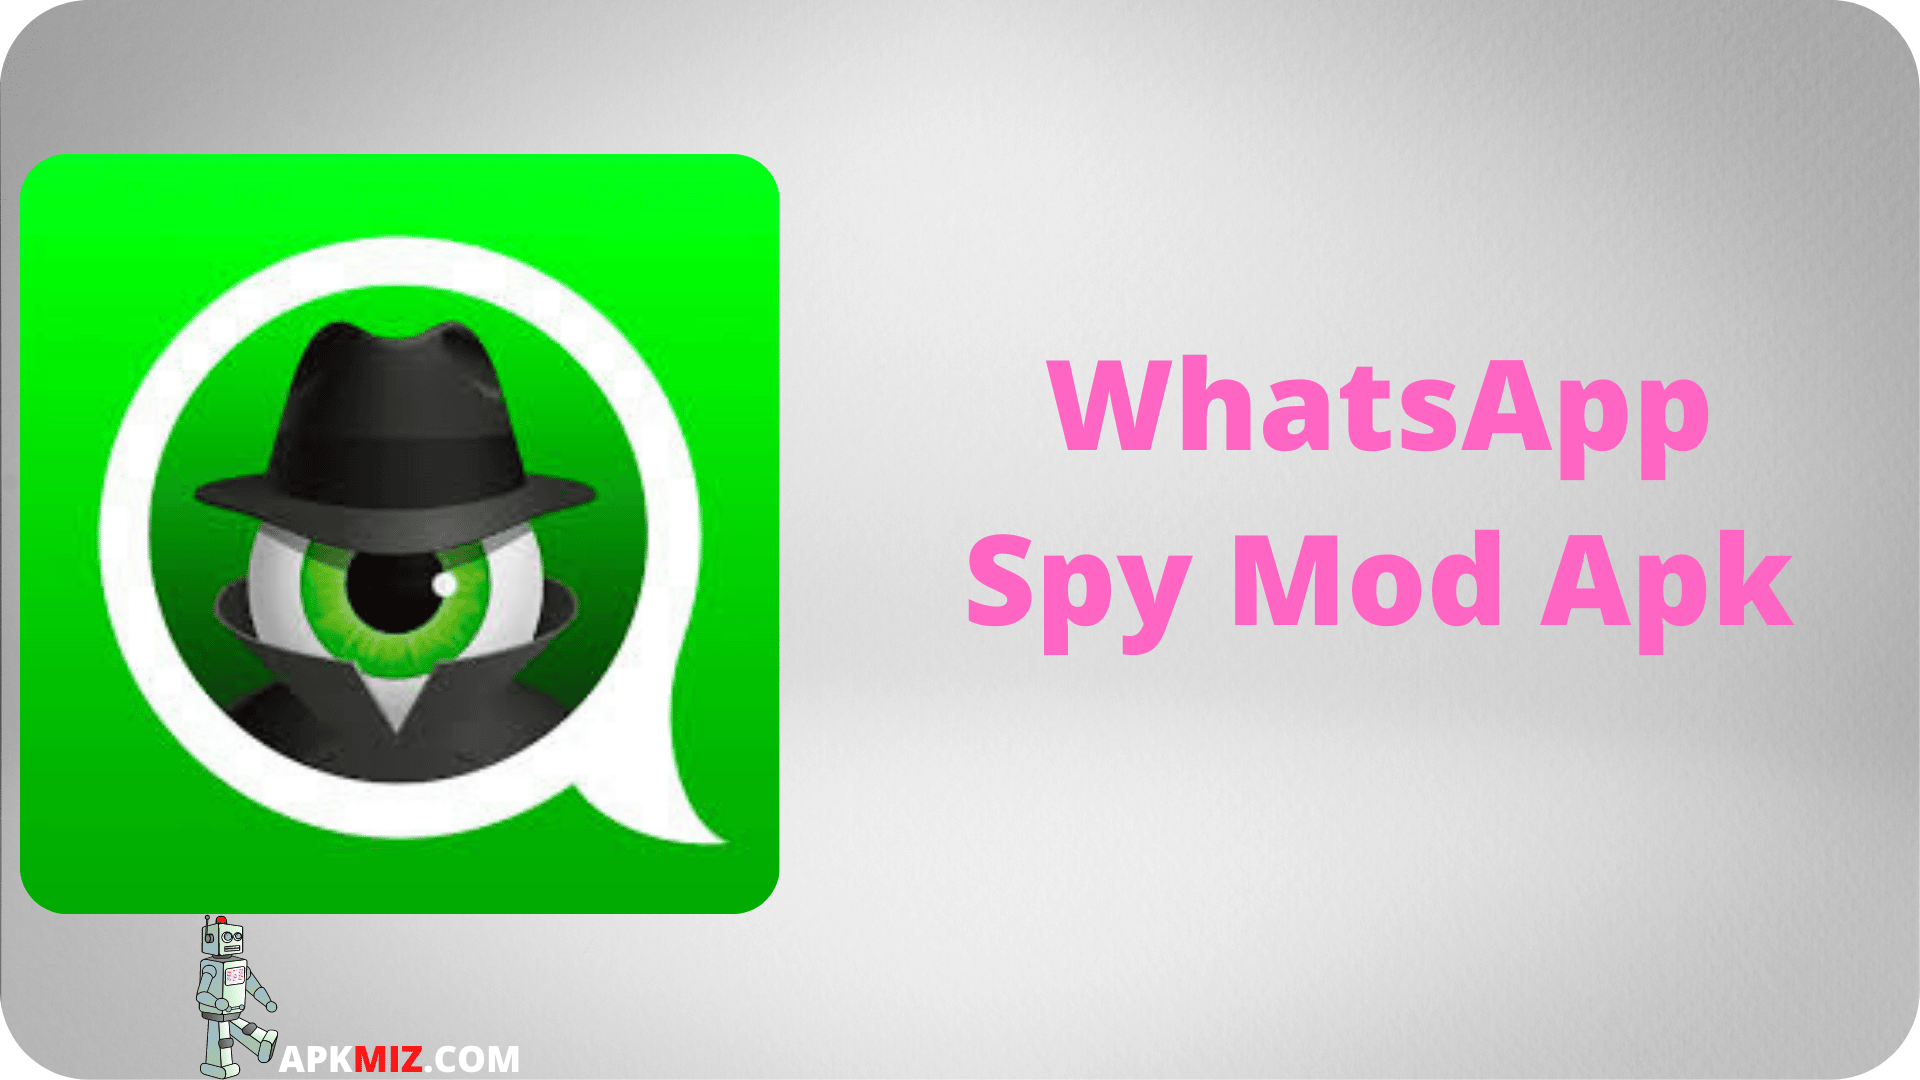 WhatsApp Spy Mod Apk